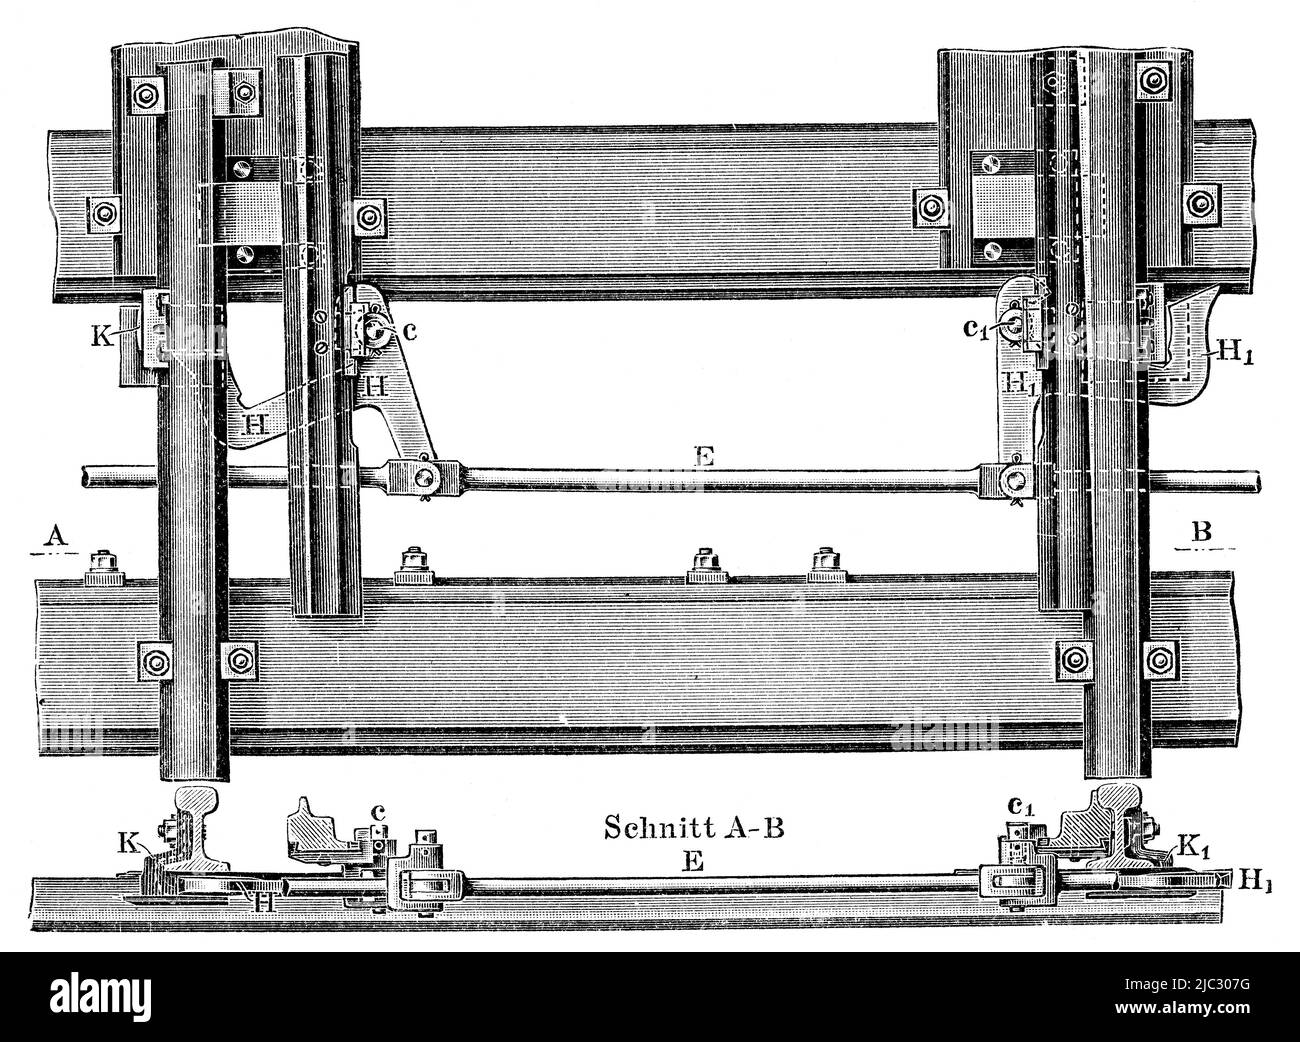 Equipo ferroviario - Dispositivos de conmutación con bloqueo de conmutador de gancho. Publicación del libro 'Meyers Konversations-Lexikon', Volumen 2, Leipzig, Alemania, 1910 Foto de stock